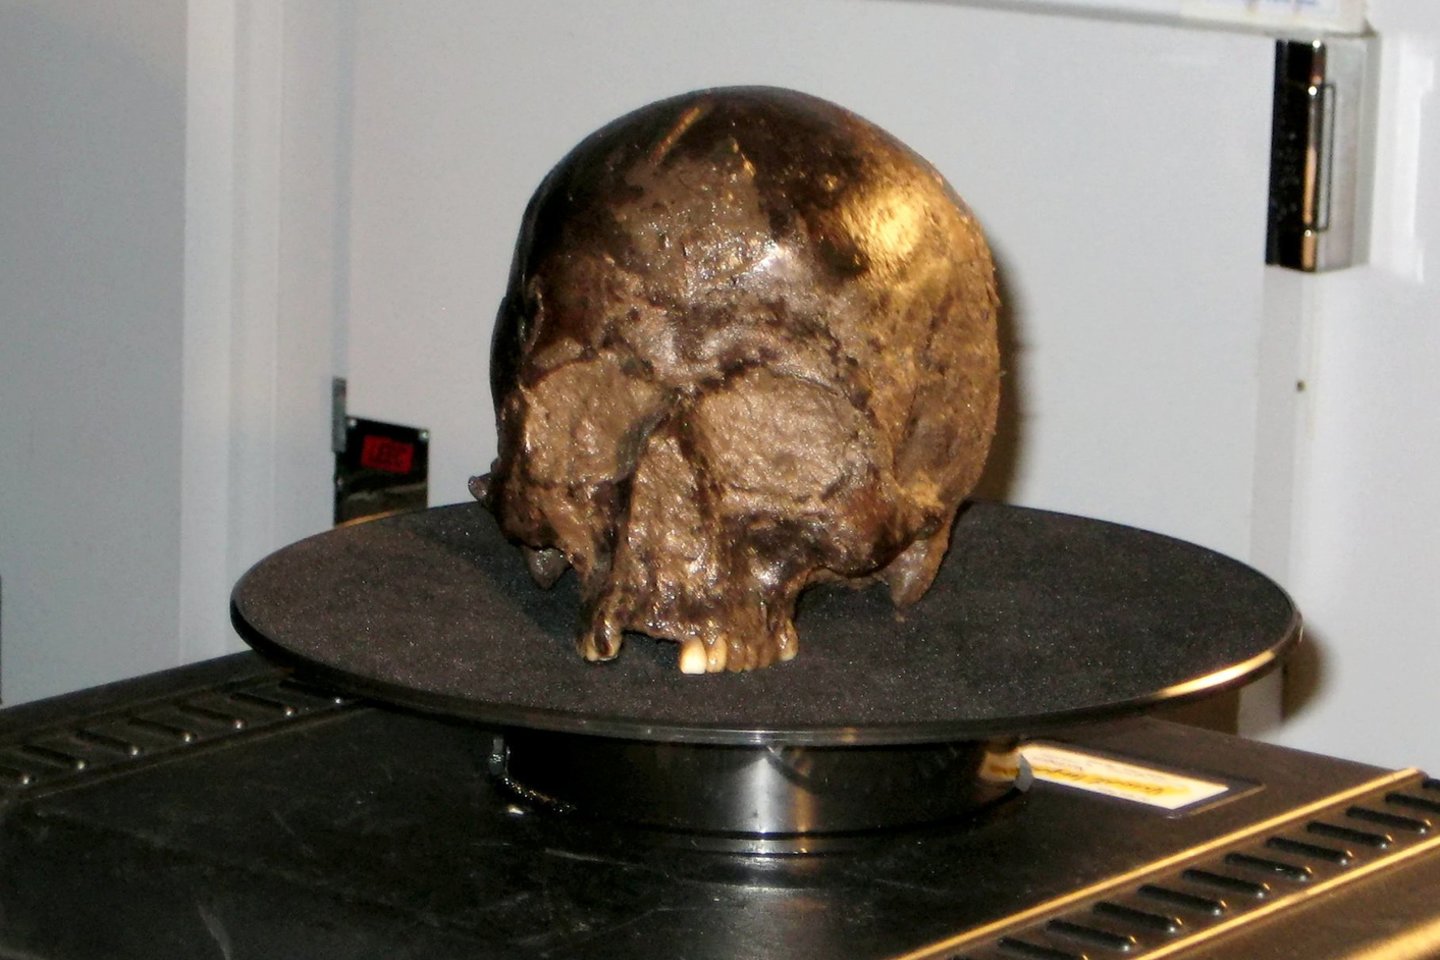  Heslingtono smegenys – tai 2600 metų senumo žmogaus smegenys, 2008 metais aptiktos Anglijoje.<br> Dr. Axelio Petzoldo nuotr.